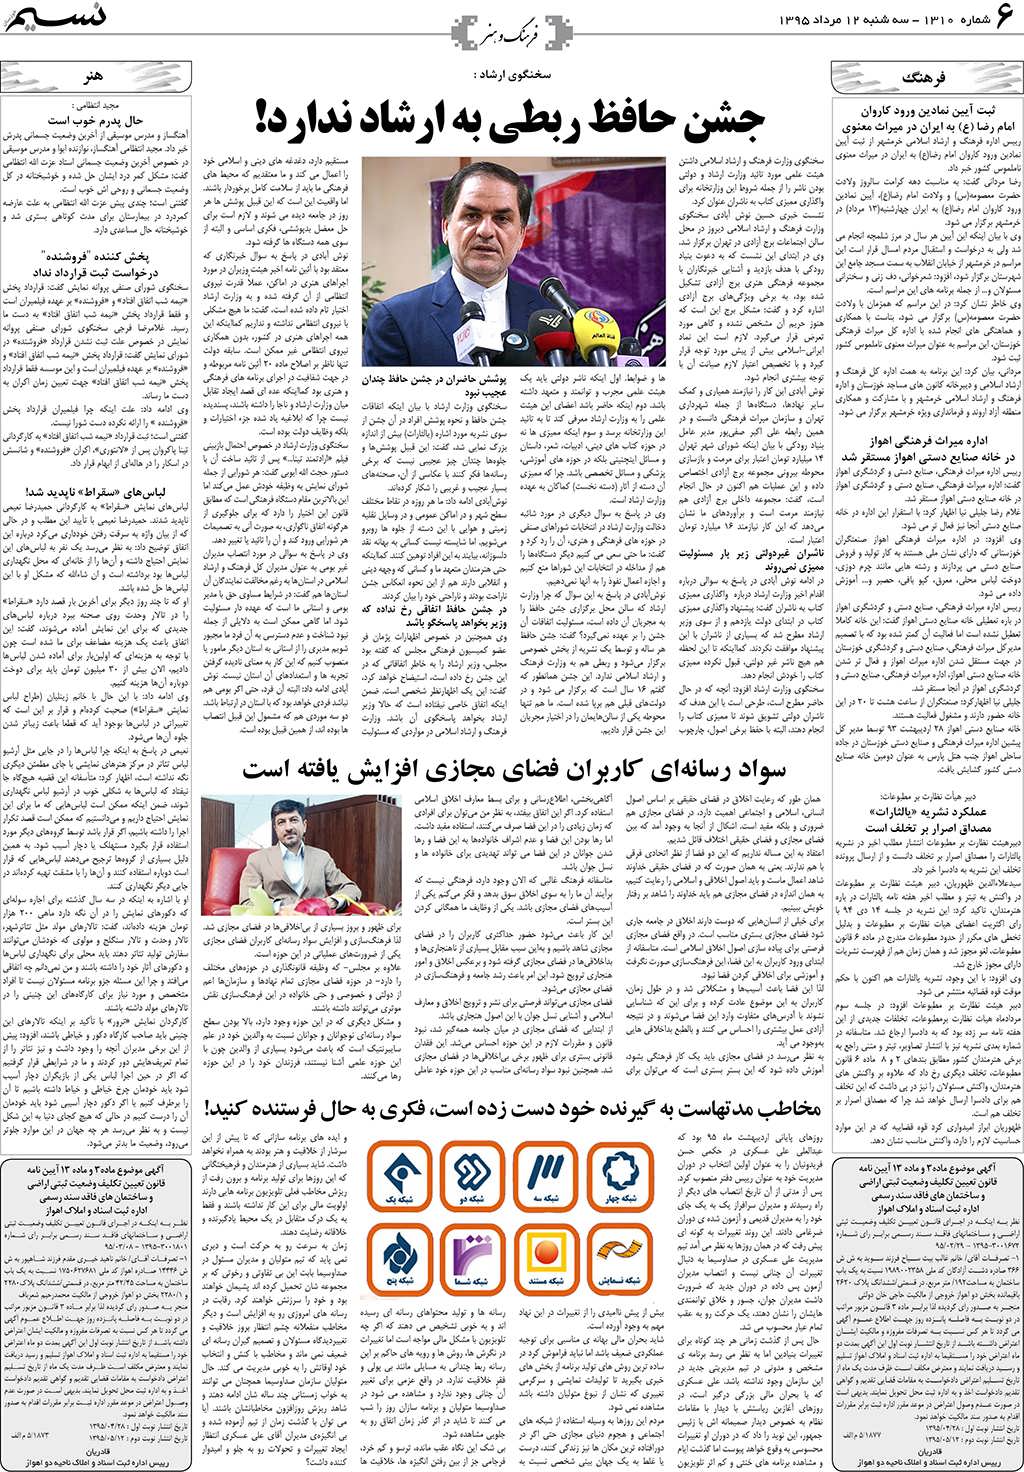 صفحه فرهنگ و هنر روزنامه نسیم شماره 1310